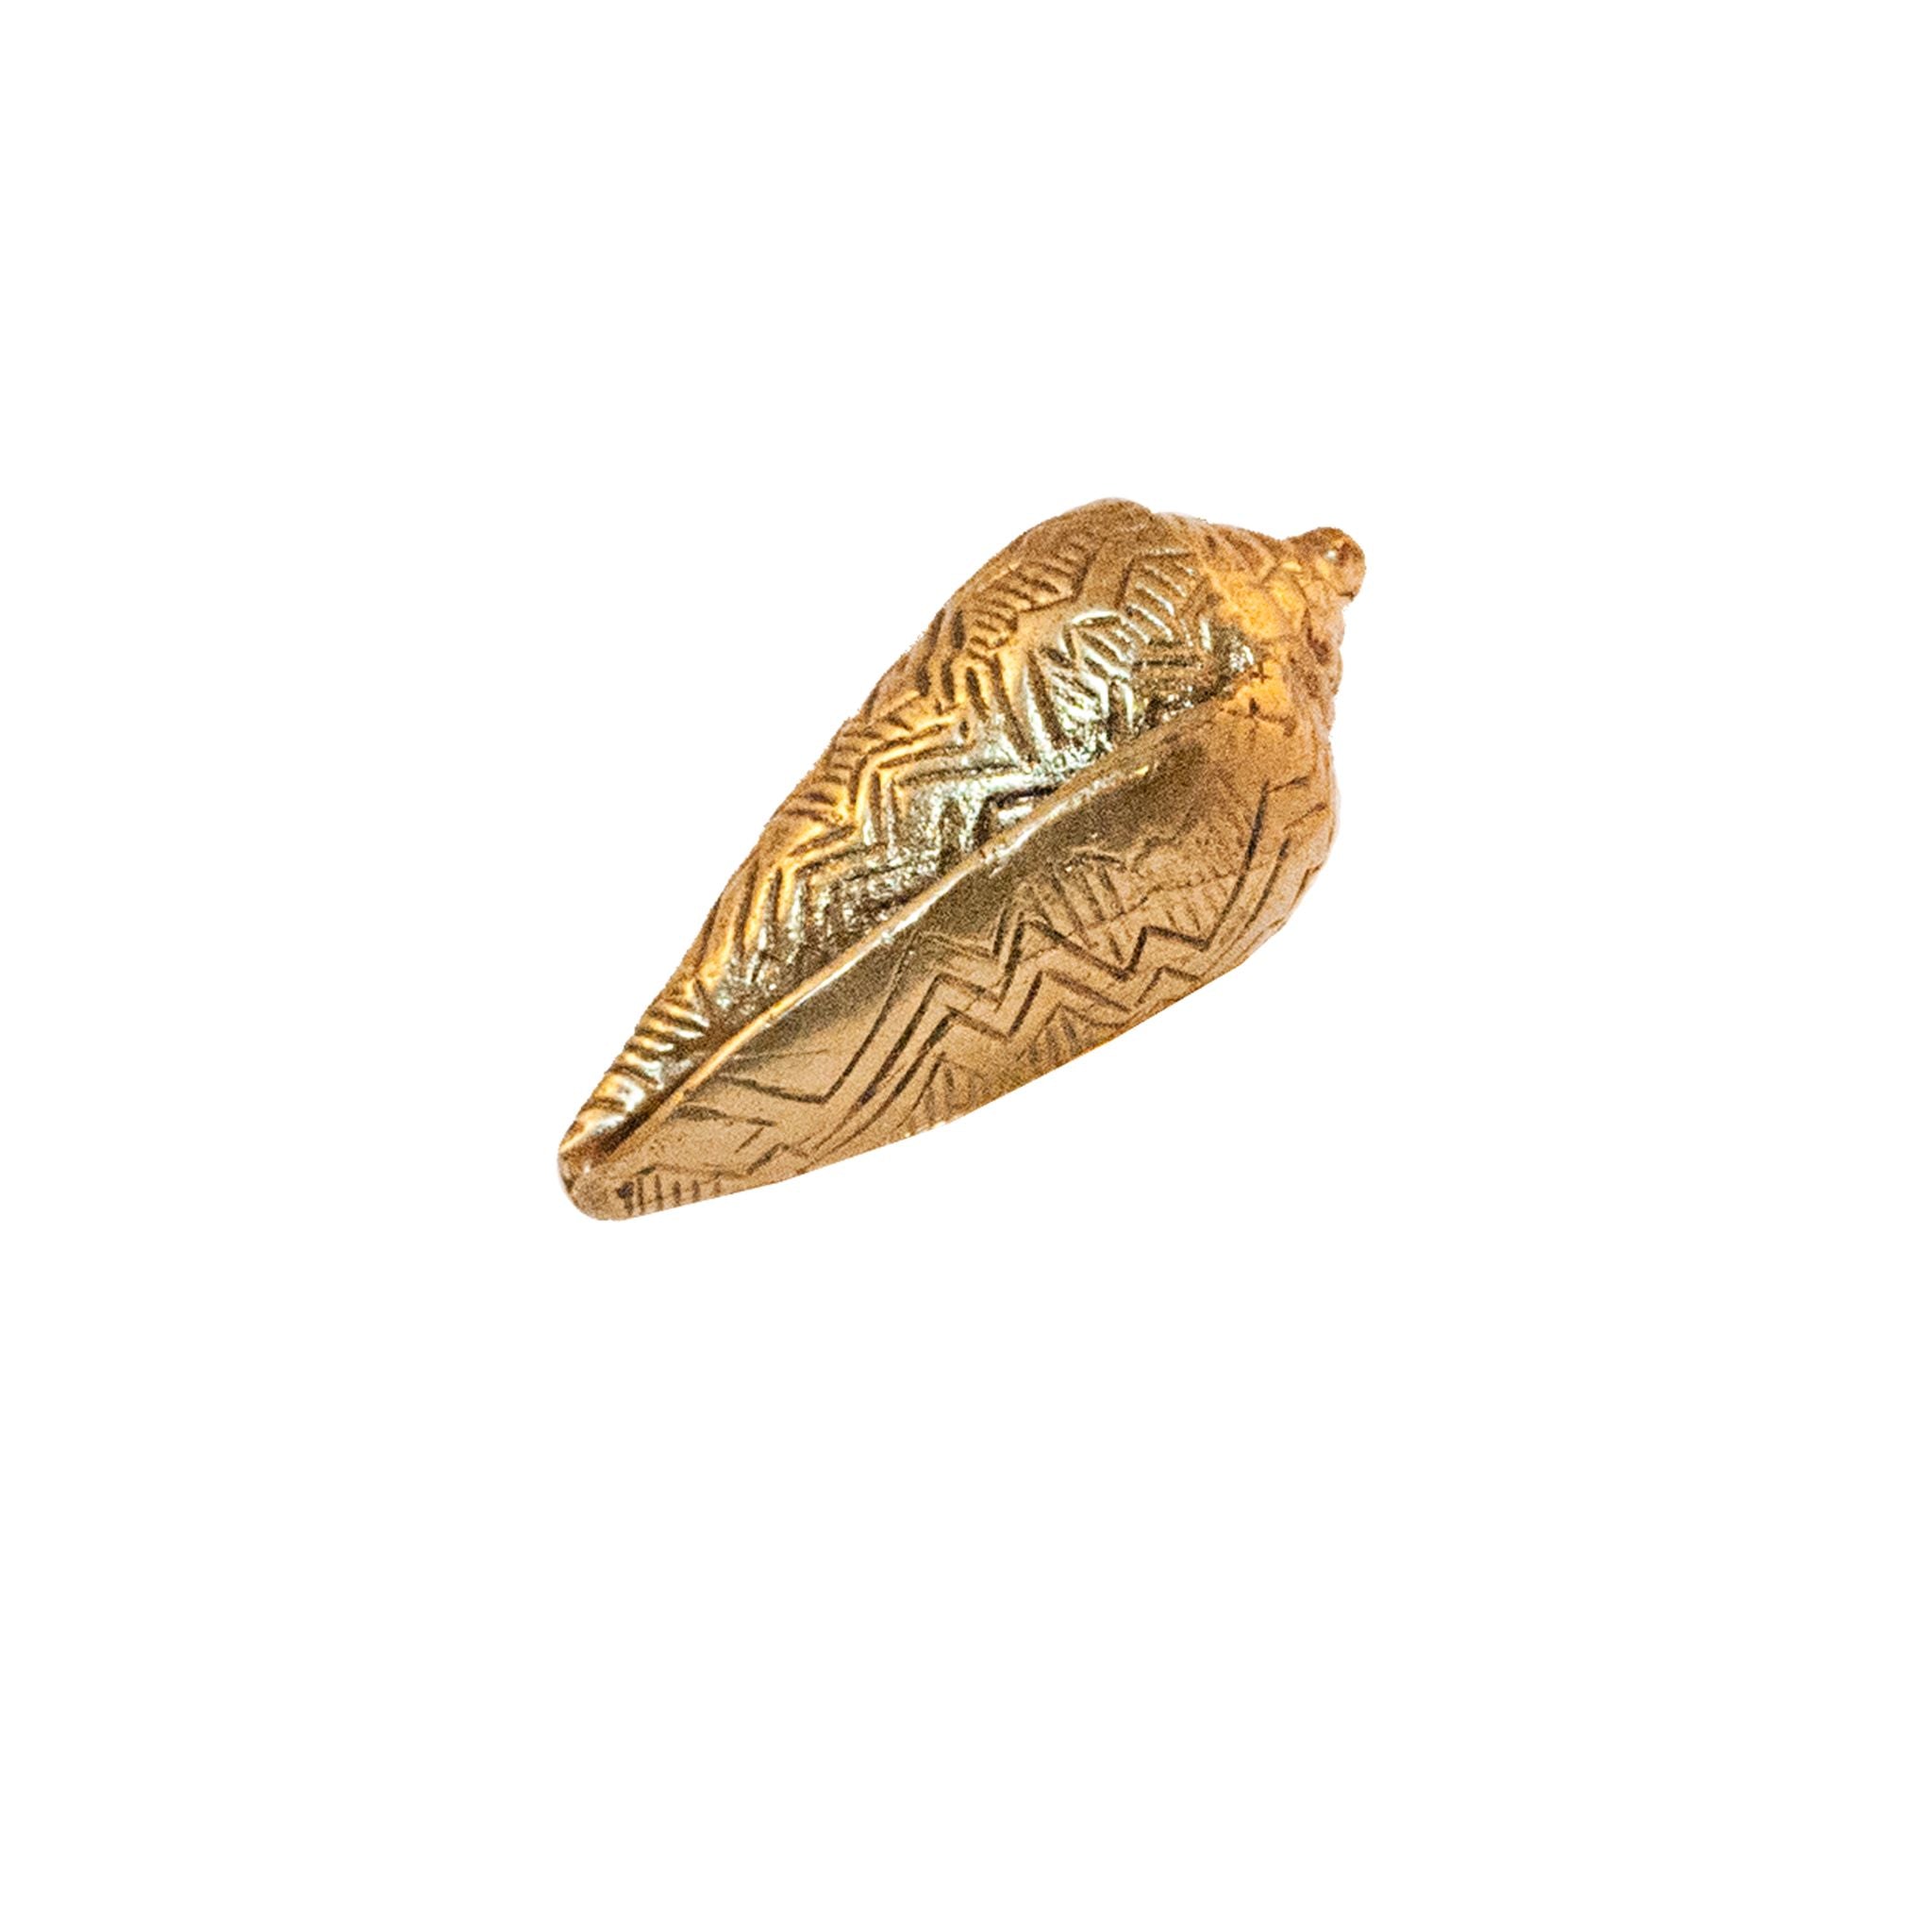 A brass knob shaped like an elongated seashell.